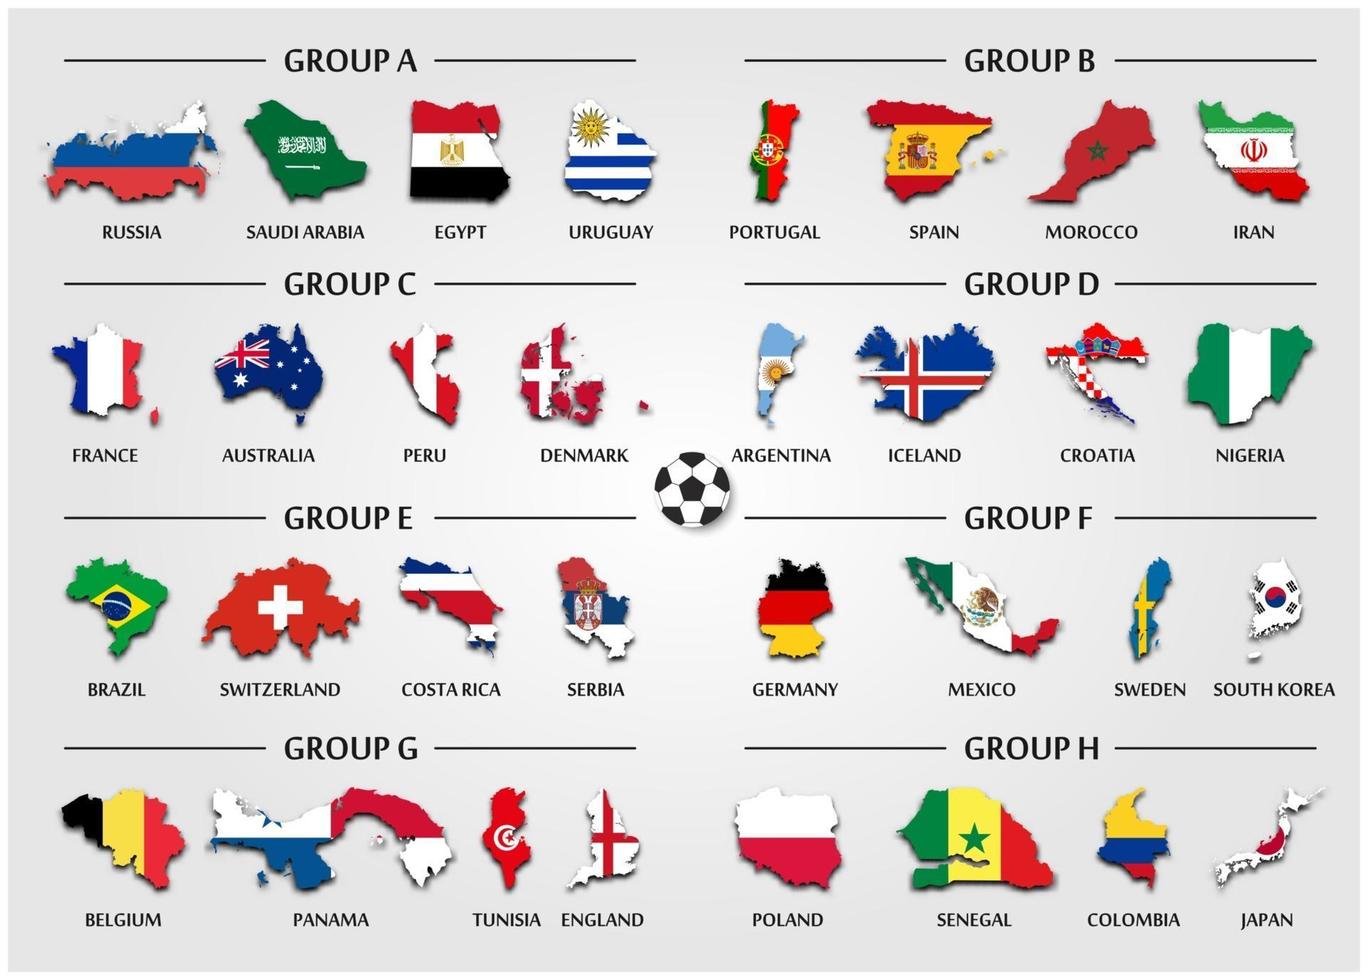 El grupo de equipo de fútbol o copa de fútbol establece el mapa del país con el vector de la bandera nacional para el torneo del campeonato mundial internacional 2018